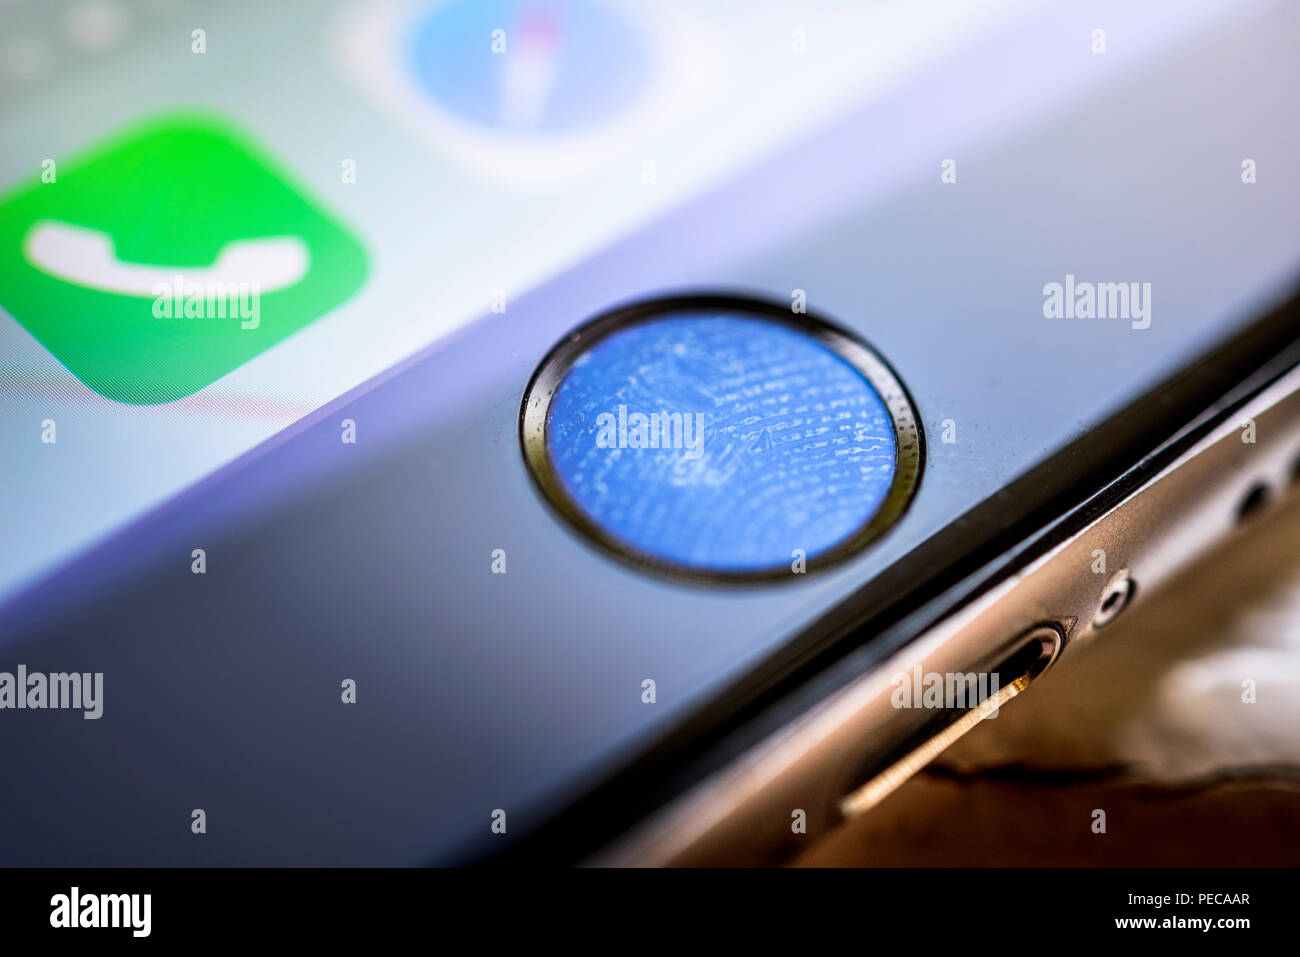 Close-up de bouton d'accueil de l'iPhone 6s avec capteur d'empreintes digitales, empreintes digitales sur Touch ID, lecteur d'empreintes digitales, smartphone, iOS Banque D'Images